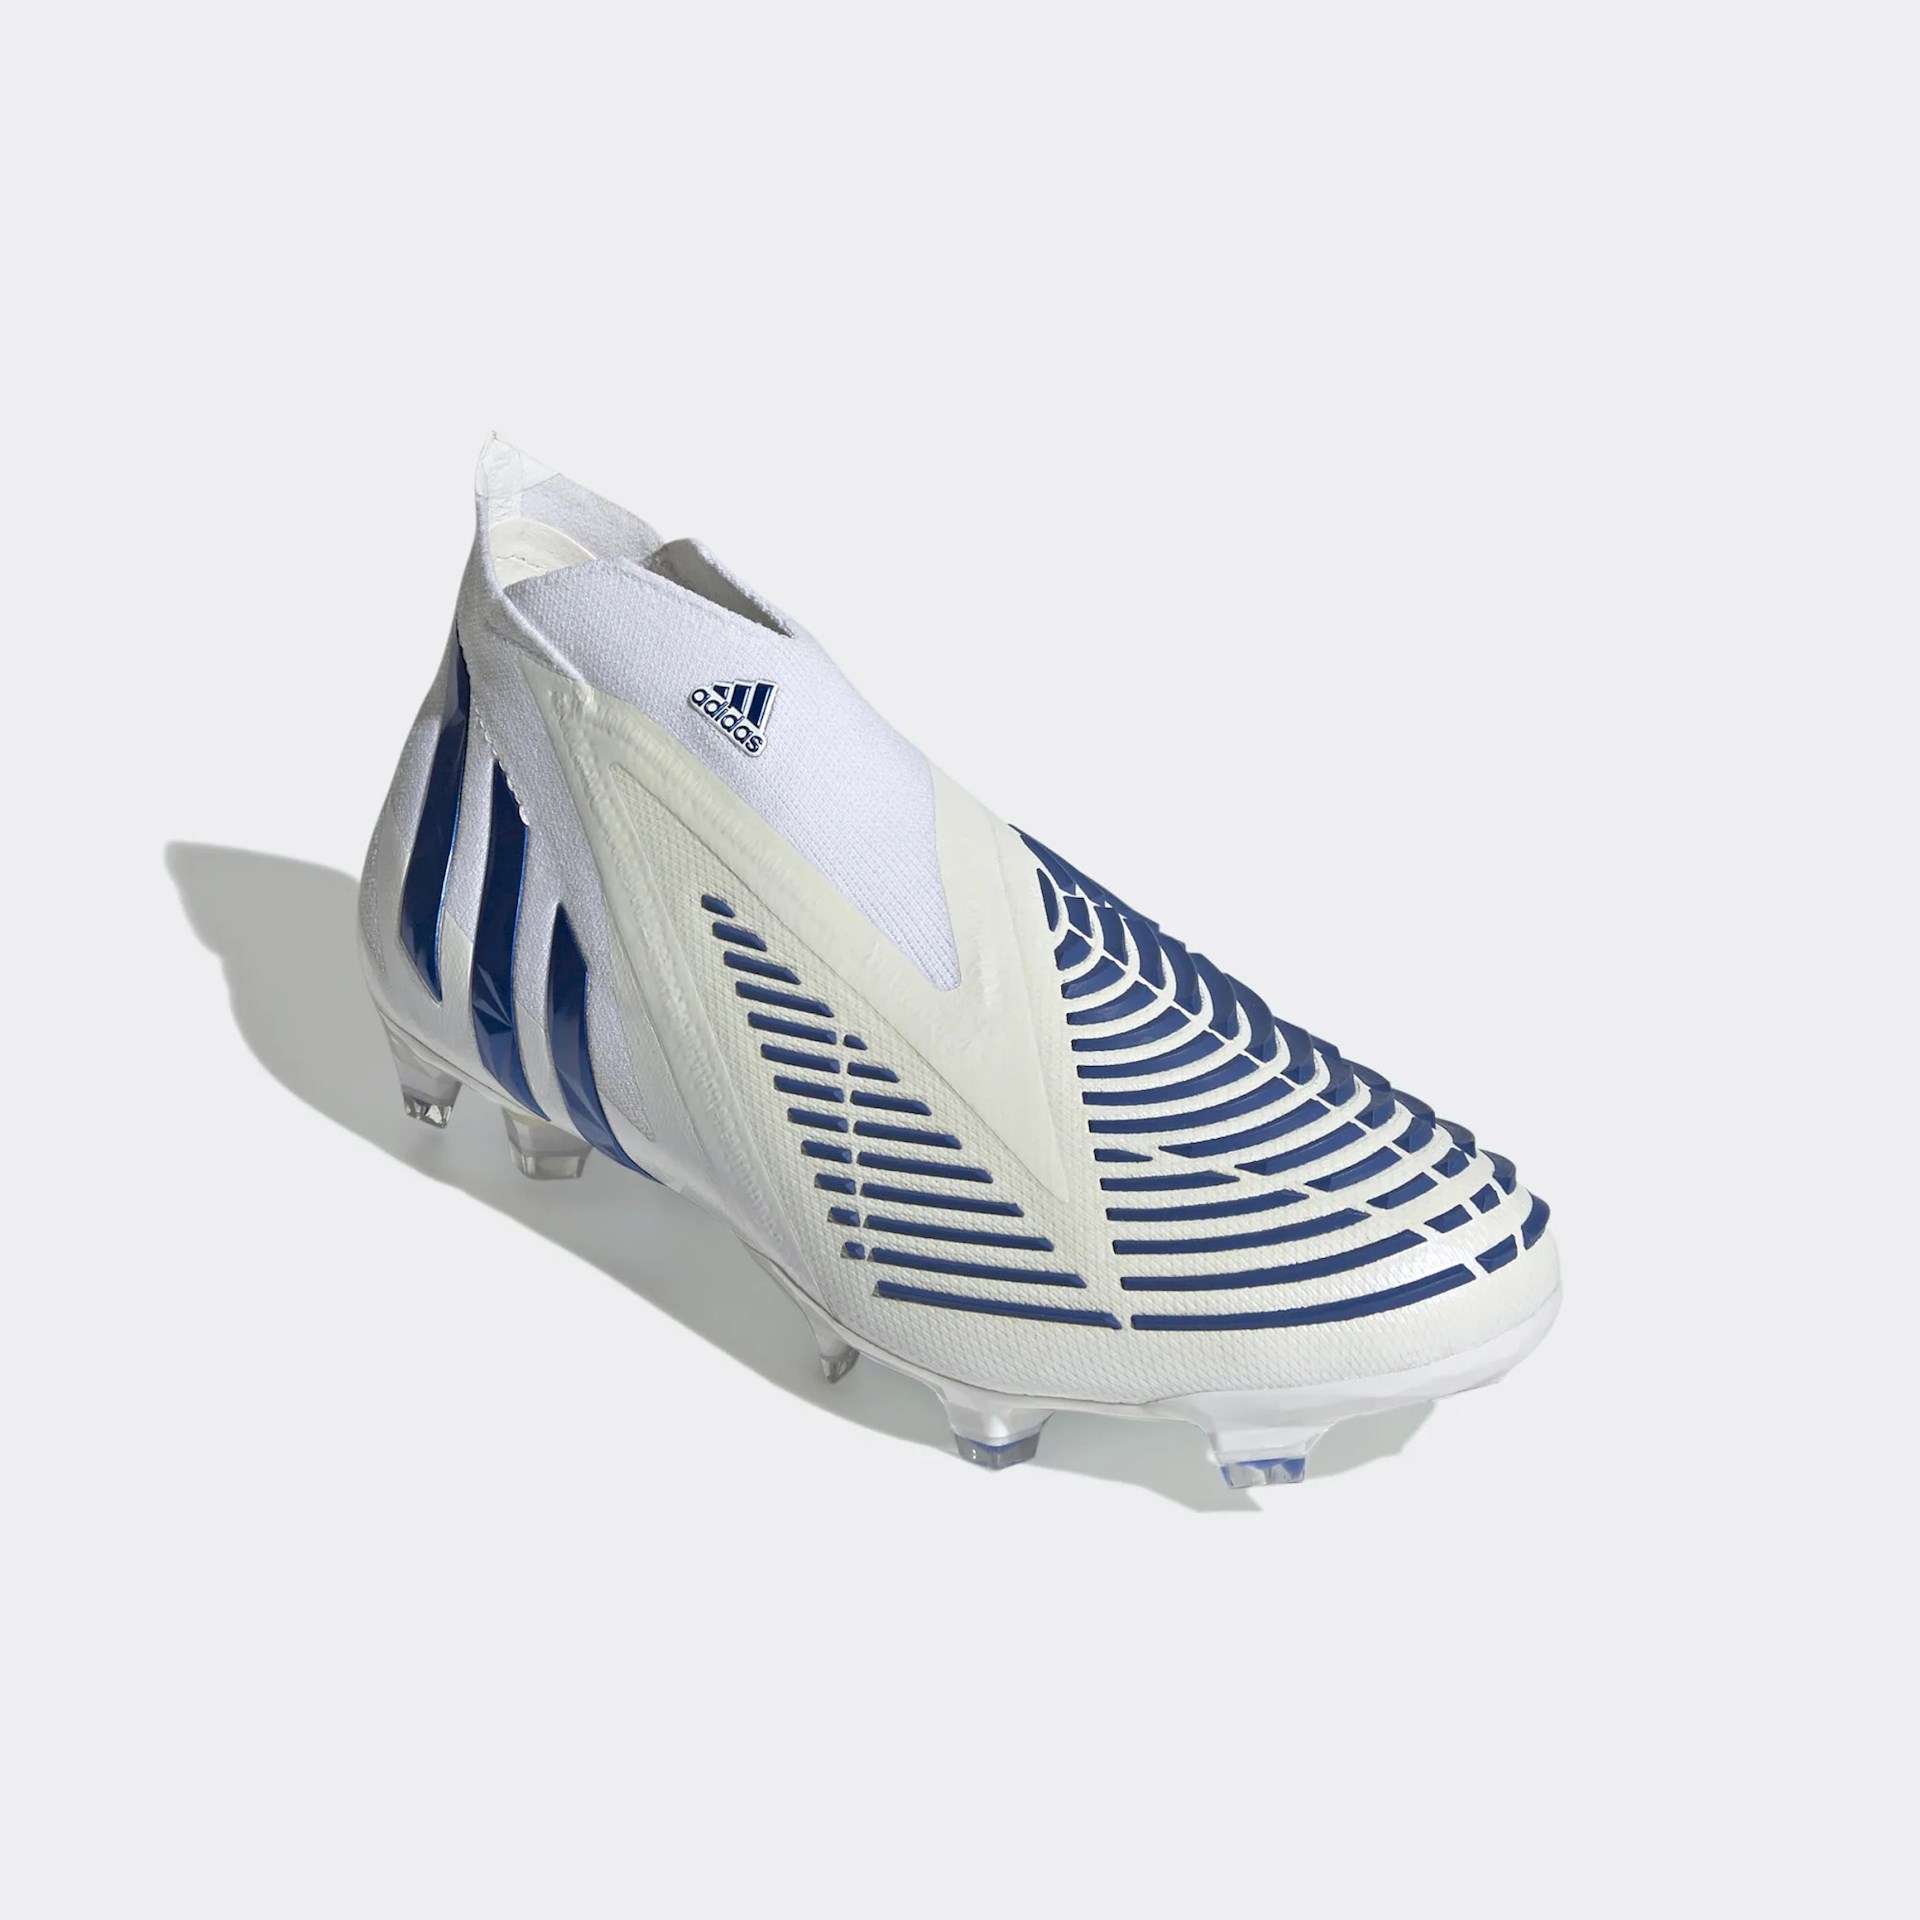 adidas Predator Edge voetbalschoenen - Blauw/Wit